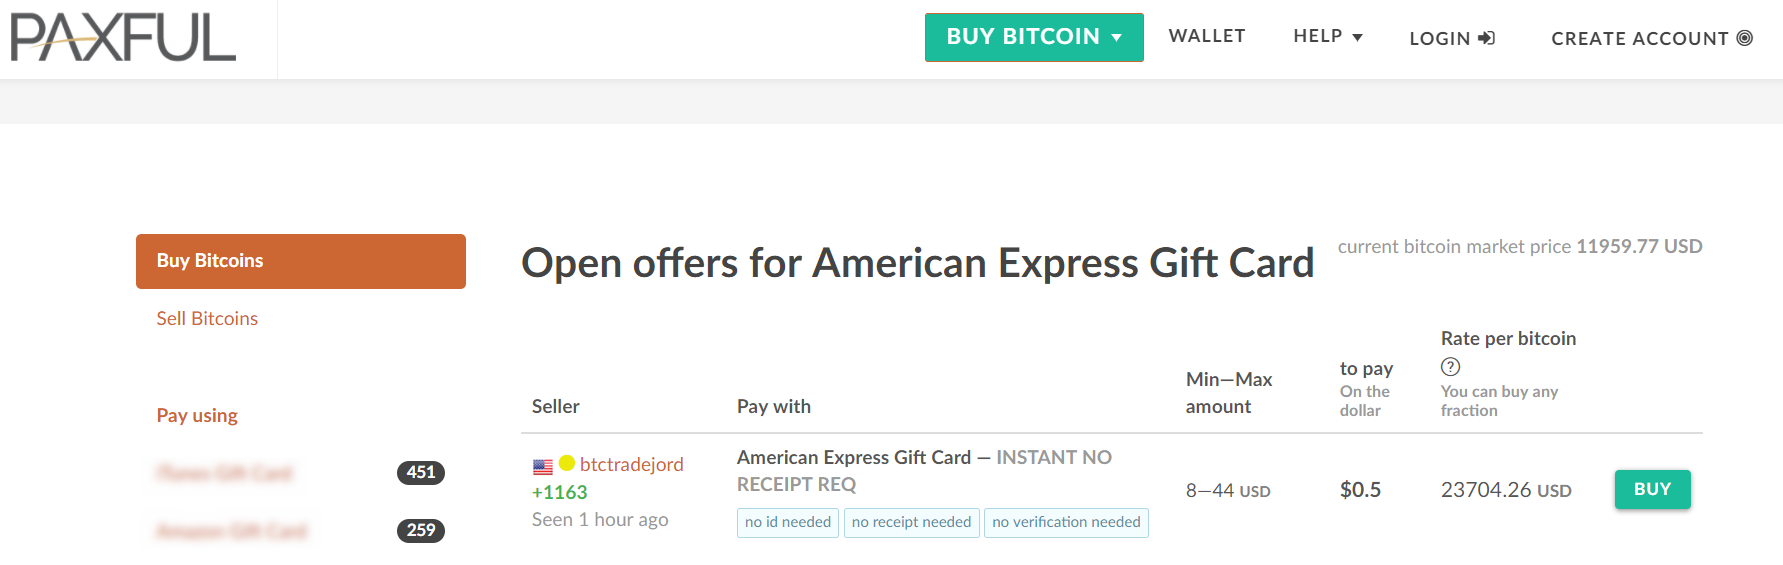 Kup BTC za pomocą karty podarunkowej American Express w Paxful